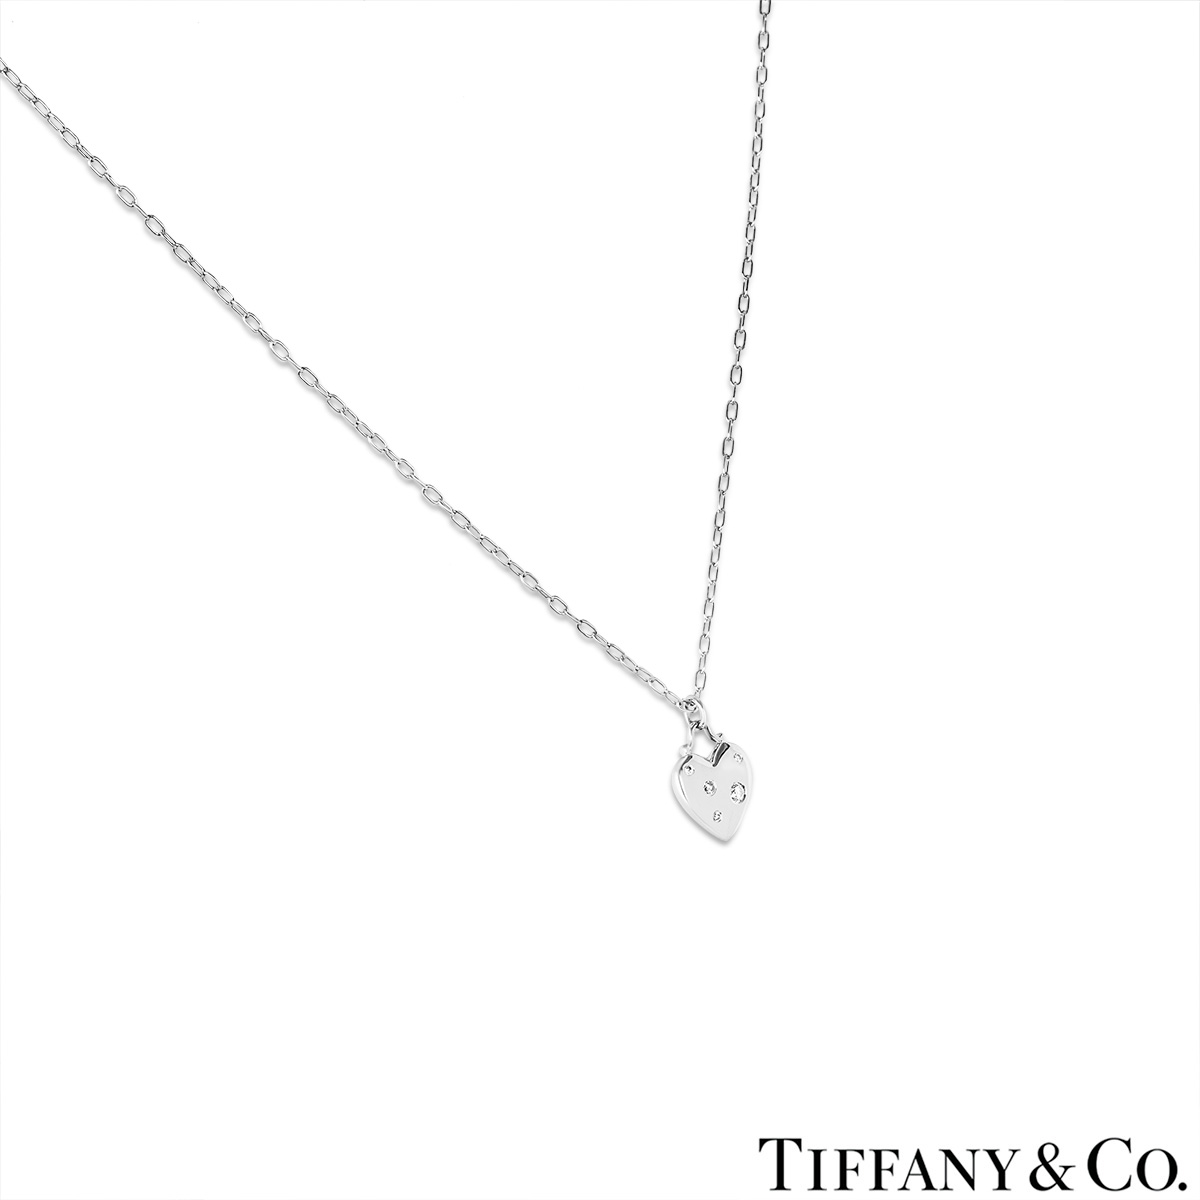 Tiffany & Co. White Gold Diamond Etoile Pendant